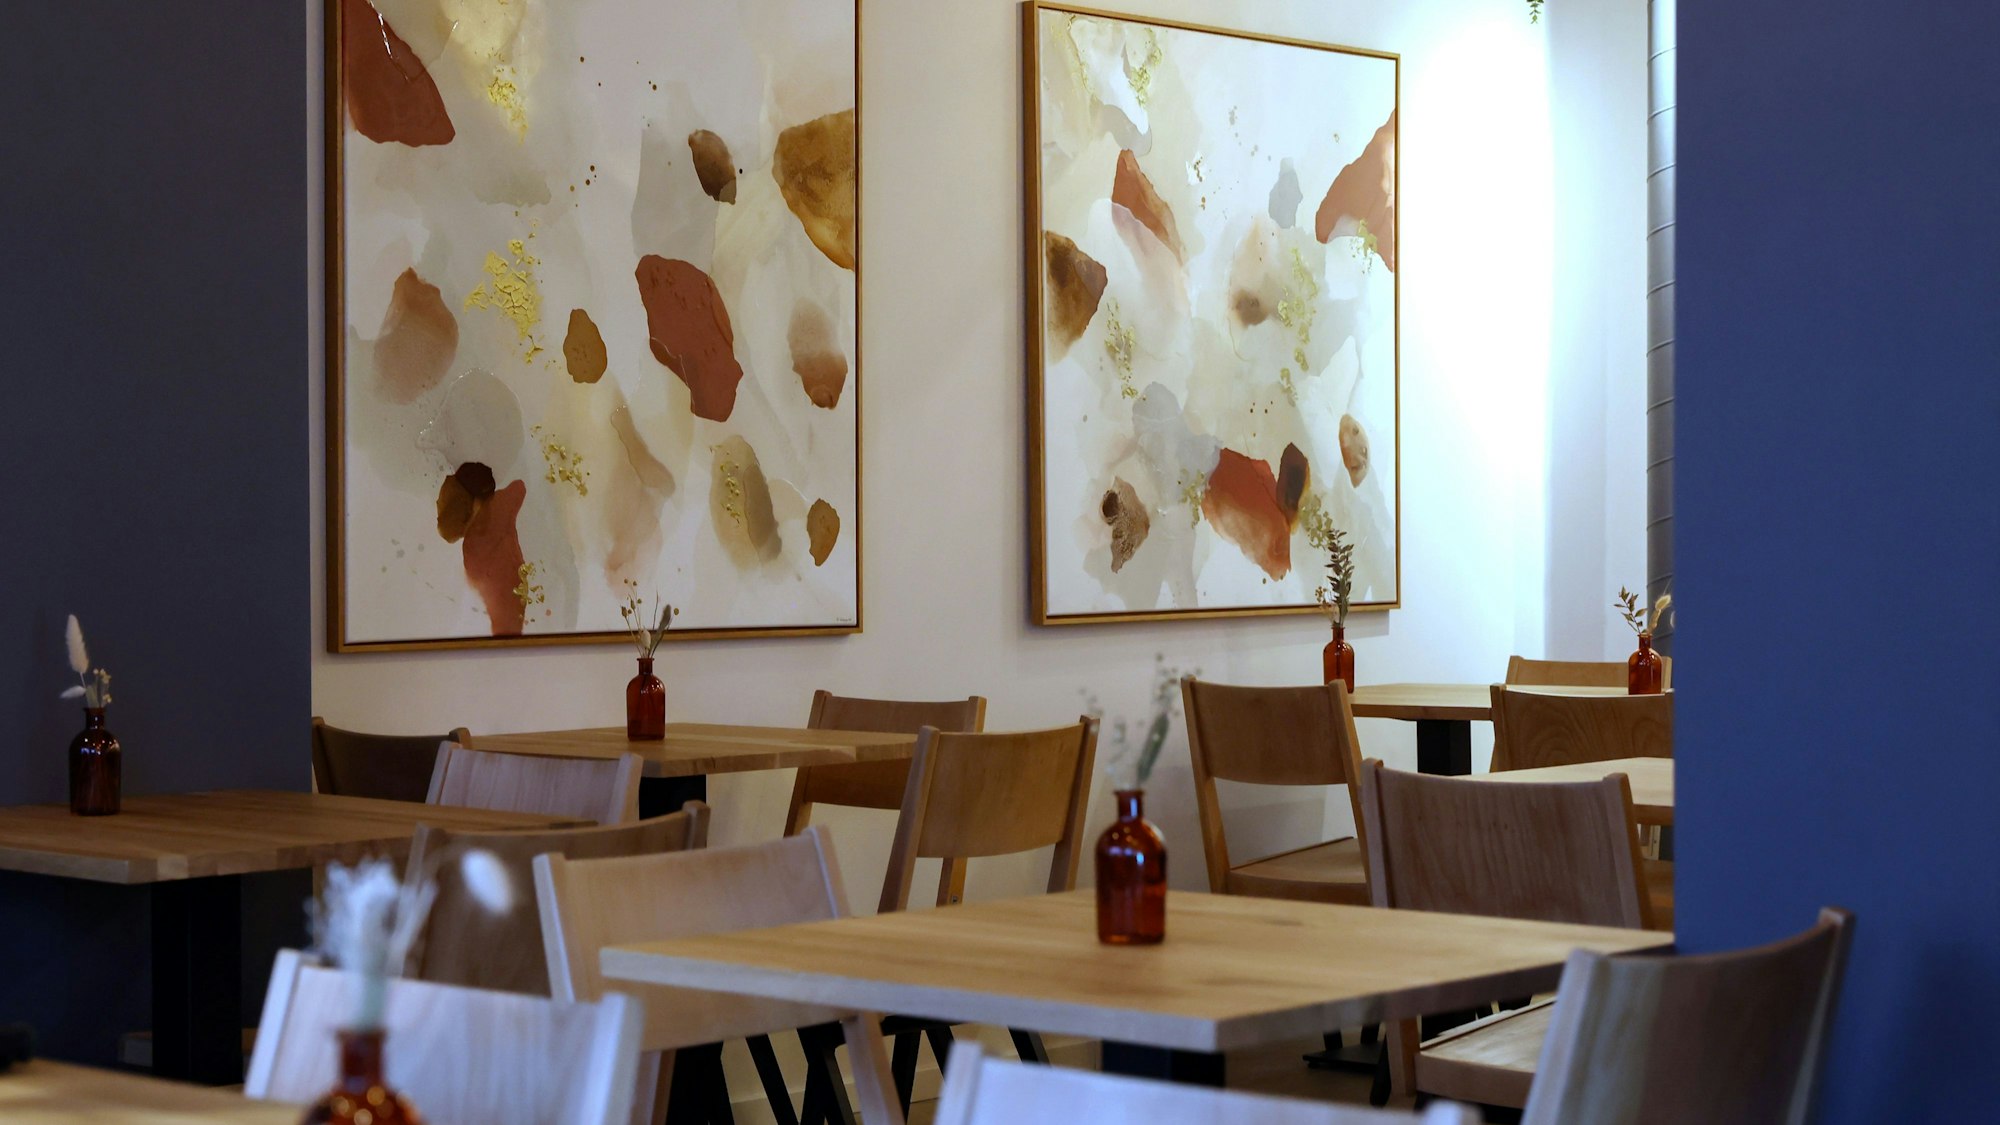 Das Bild zeigt das Innere des Restaurants: Bilder von Natascha Wierny schmücken die Wände.